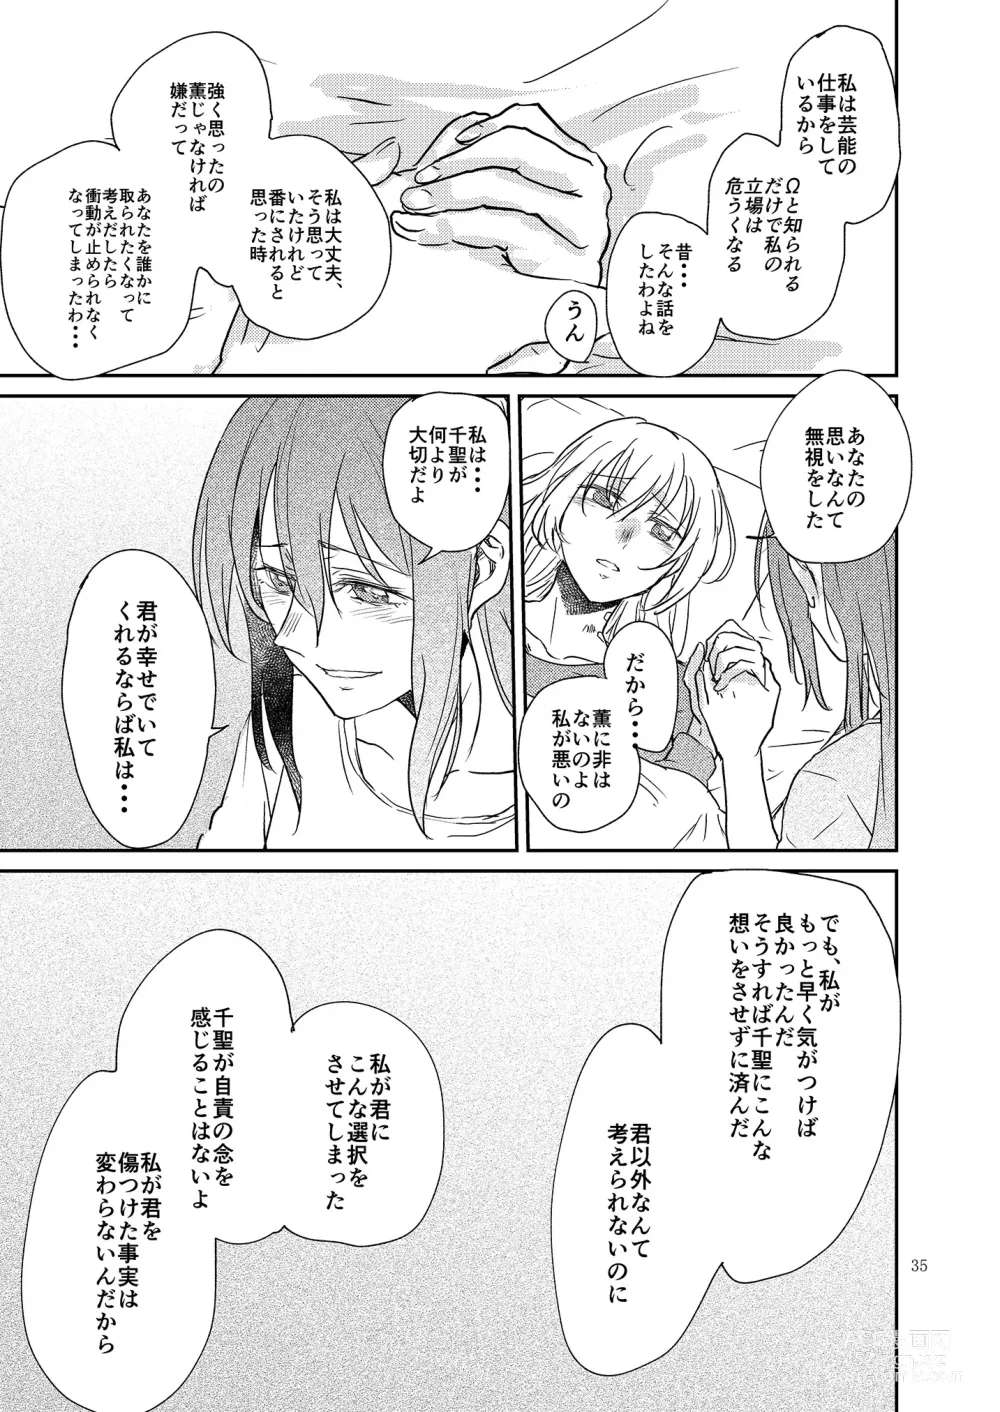 Page 35 of doujinshi Kimi no Tame ni Watashi ni wa